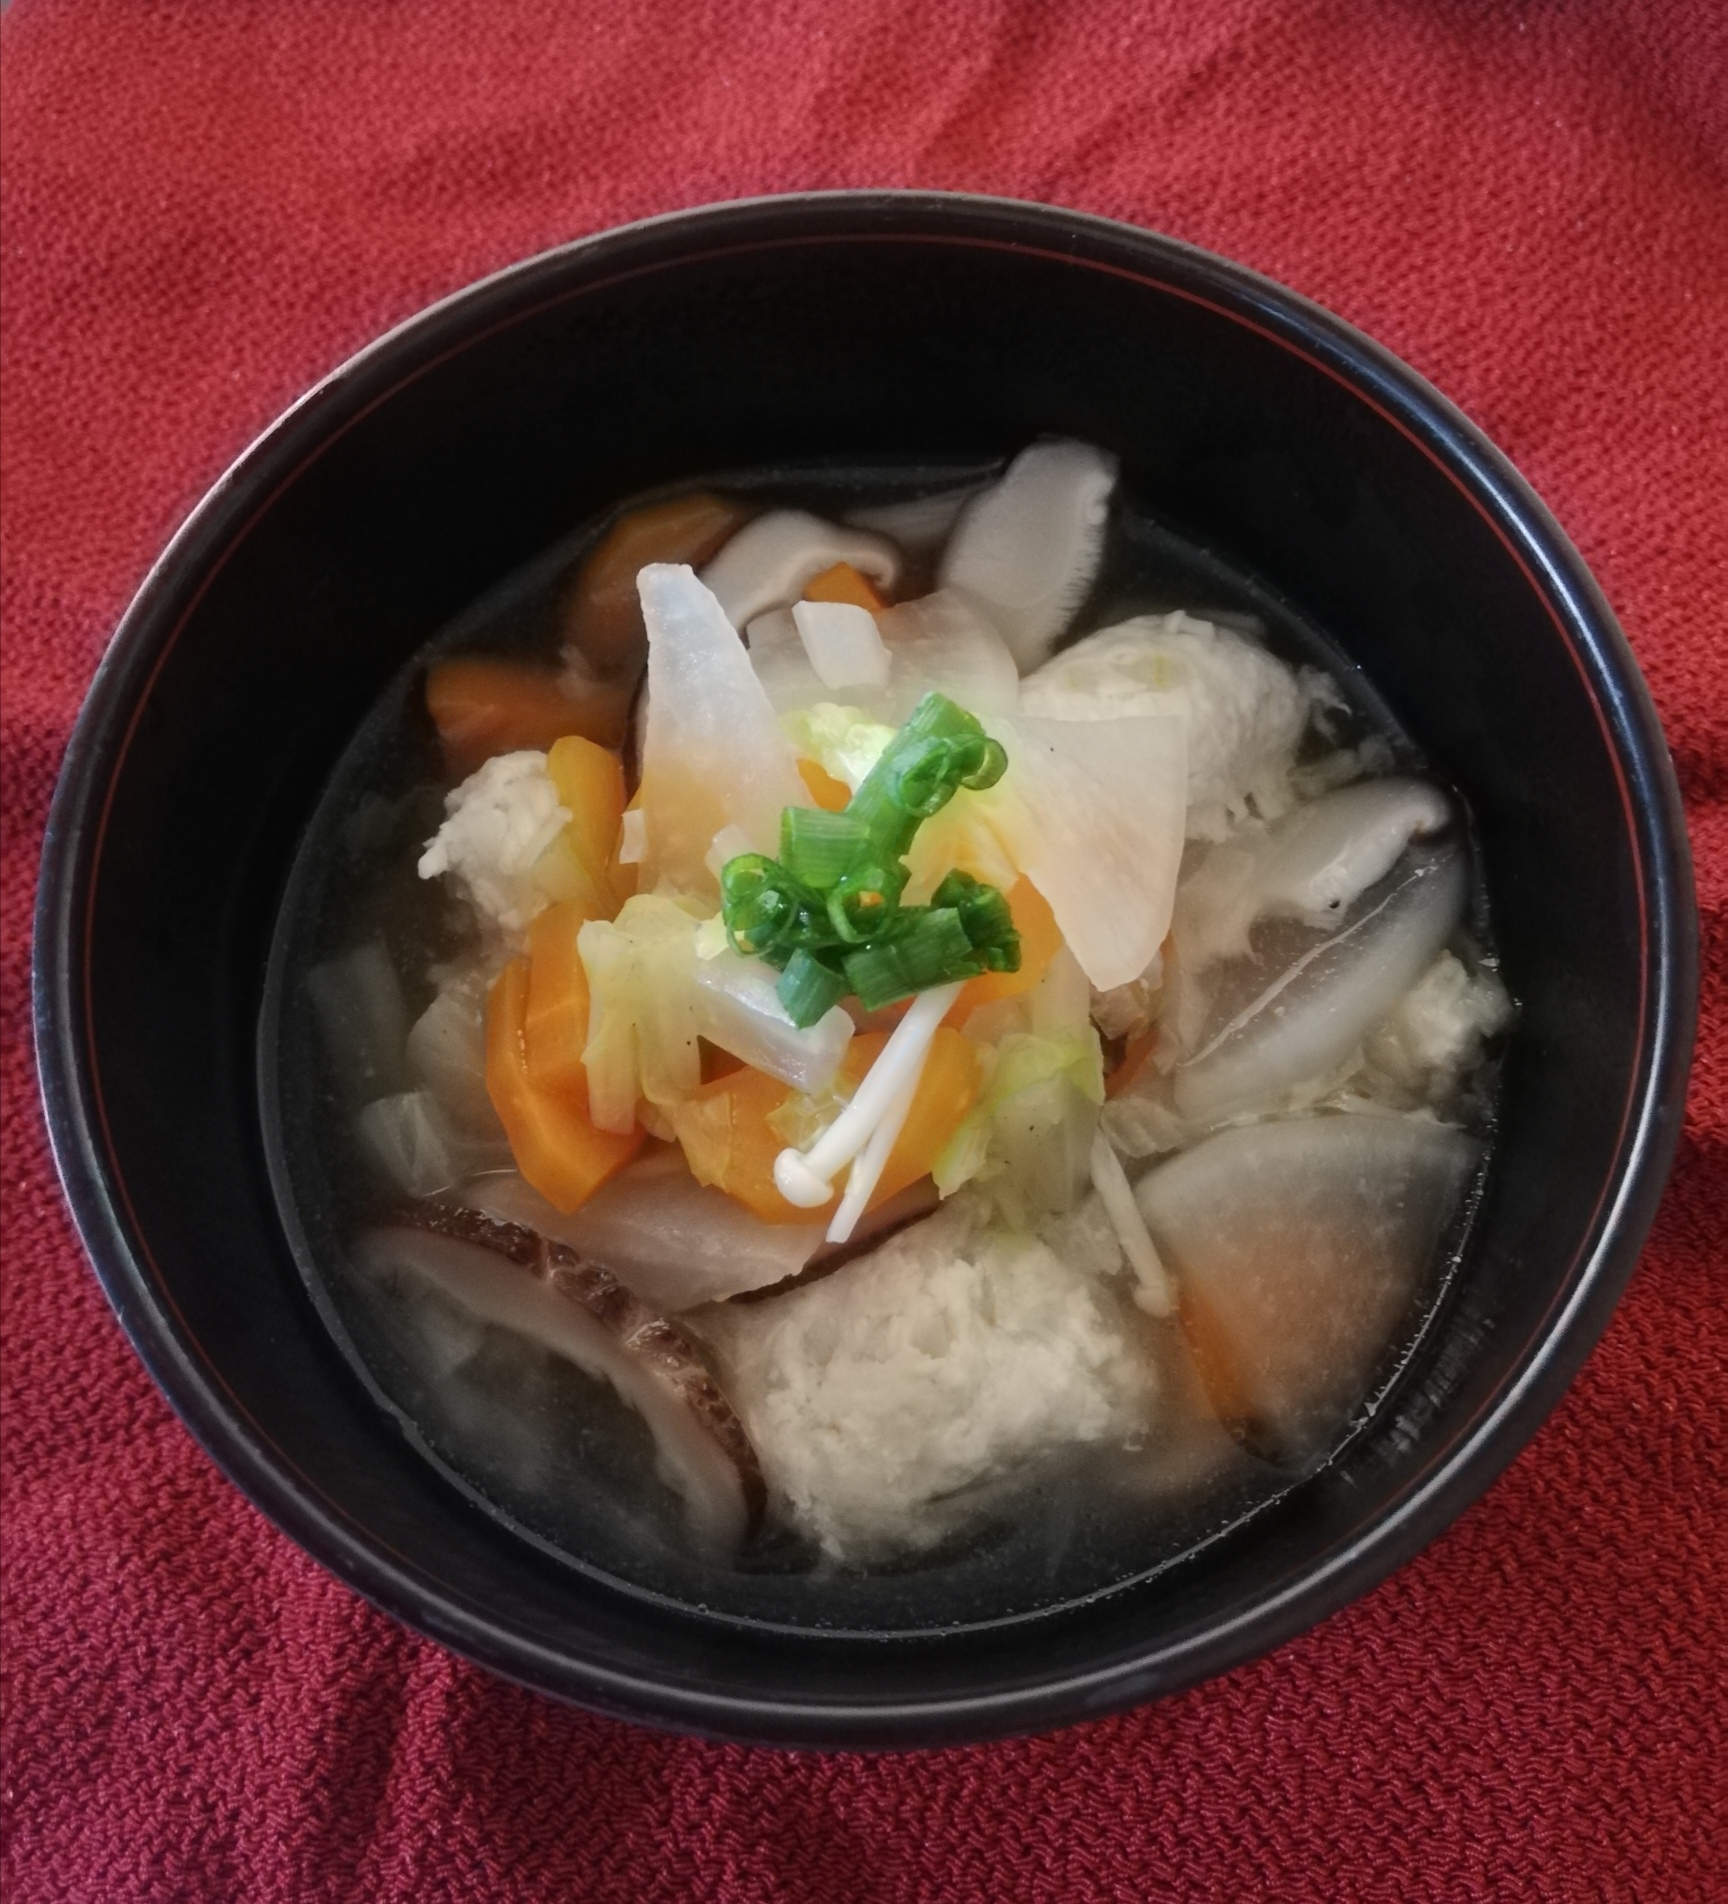 簡単♪ビニール袋de鶏団子☆野菜たっぷりスープ